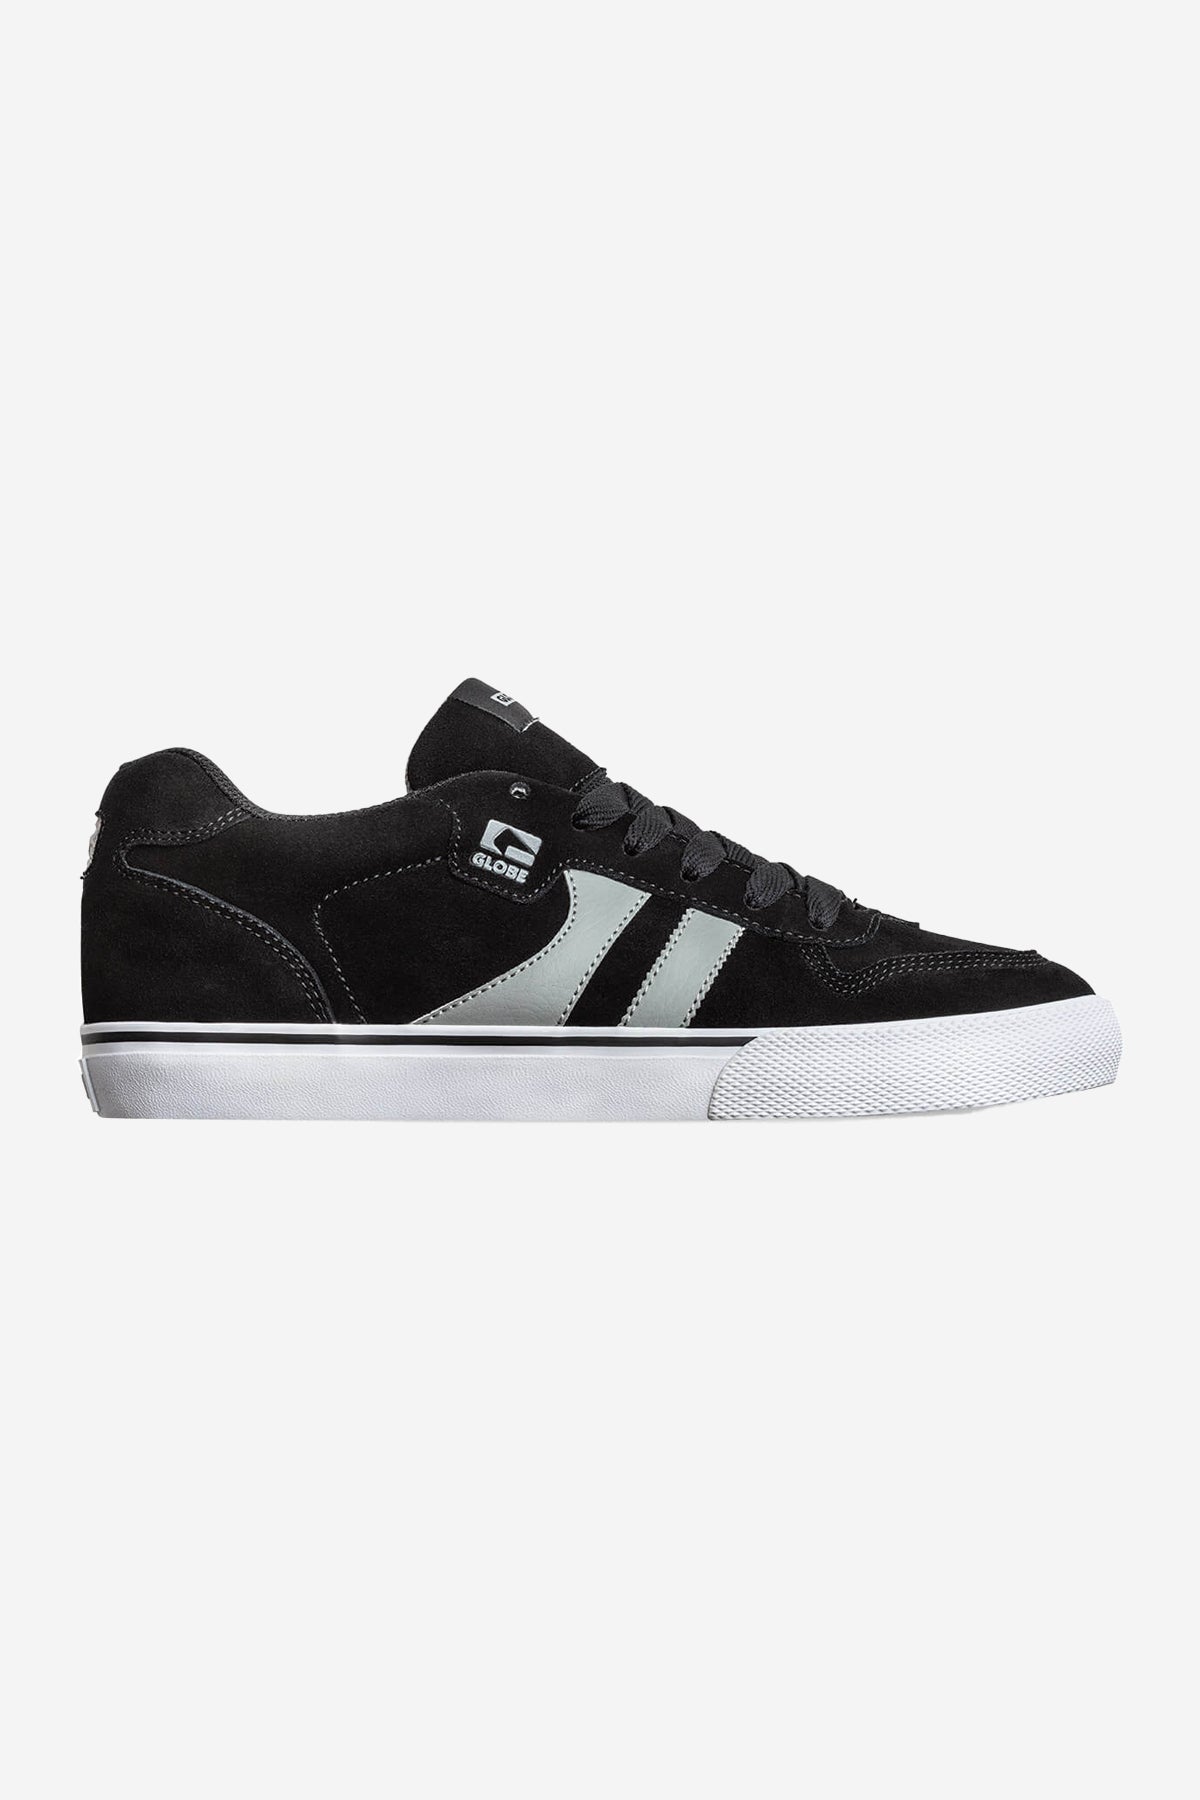 Encore-2 Black/Light Grey skateboard  schoenen